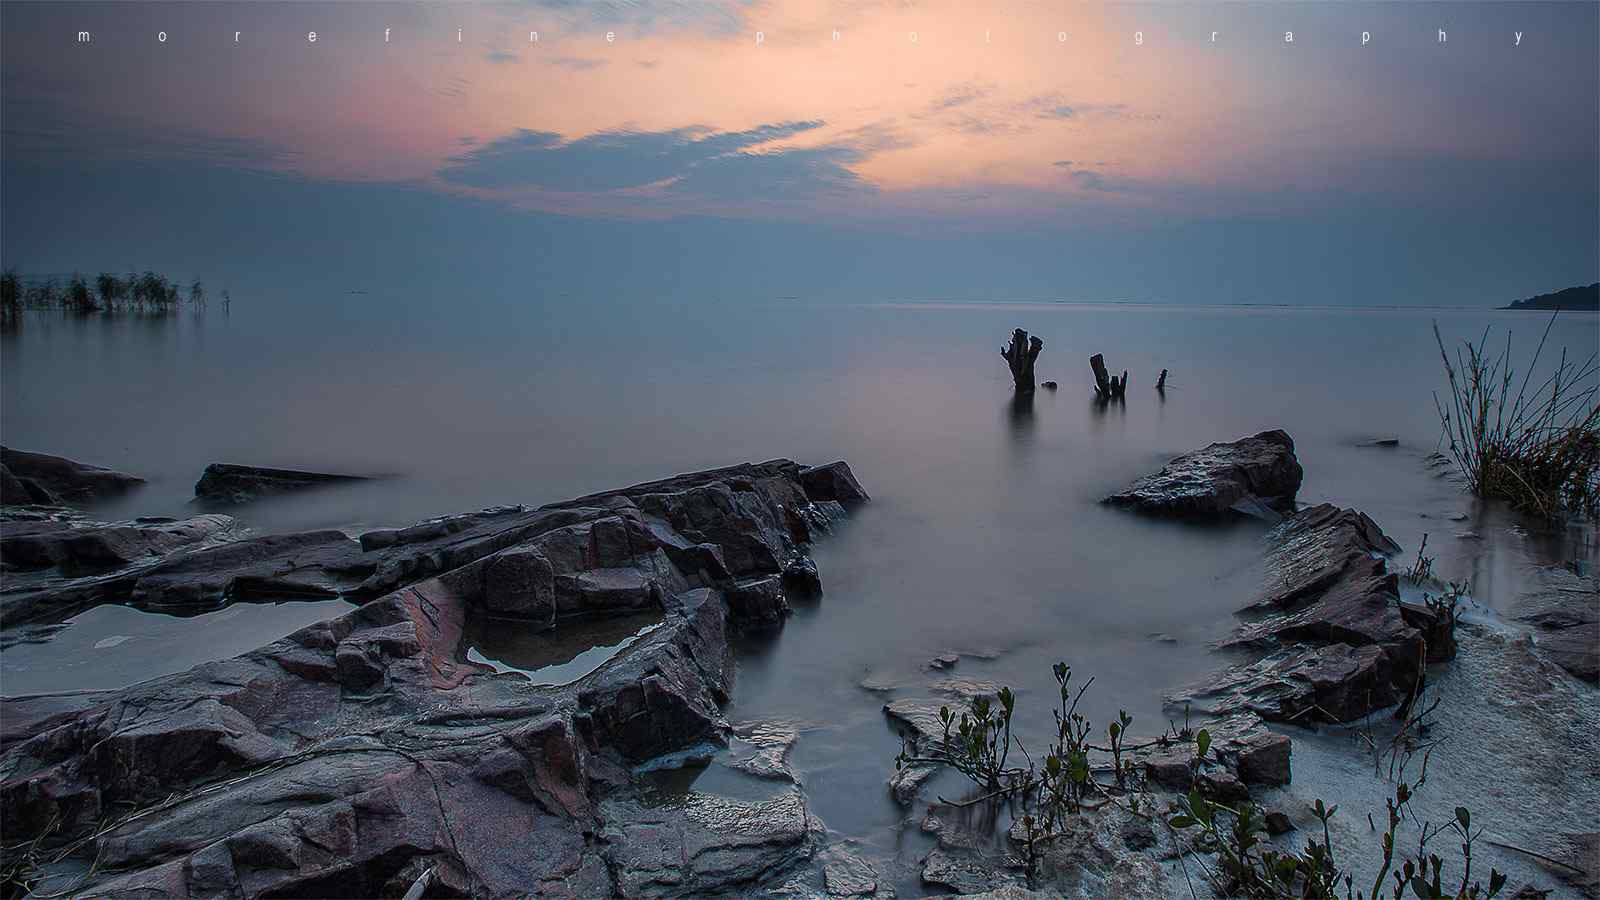 唯美的太湖晨曦风景图片